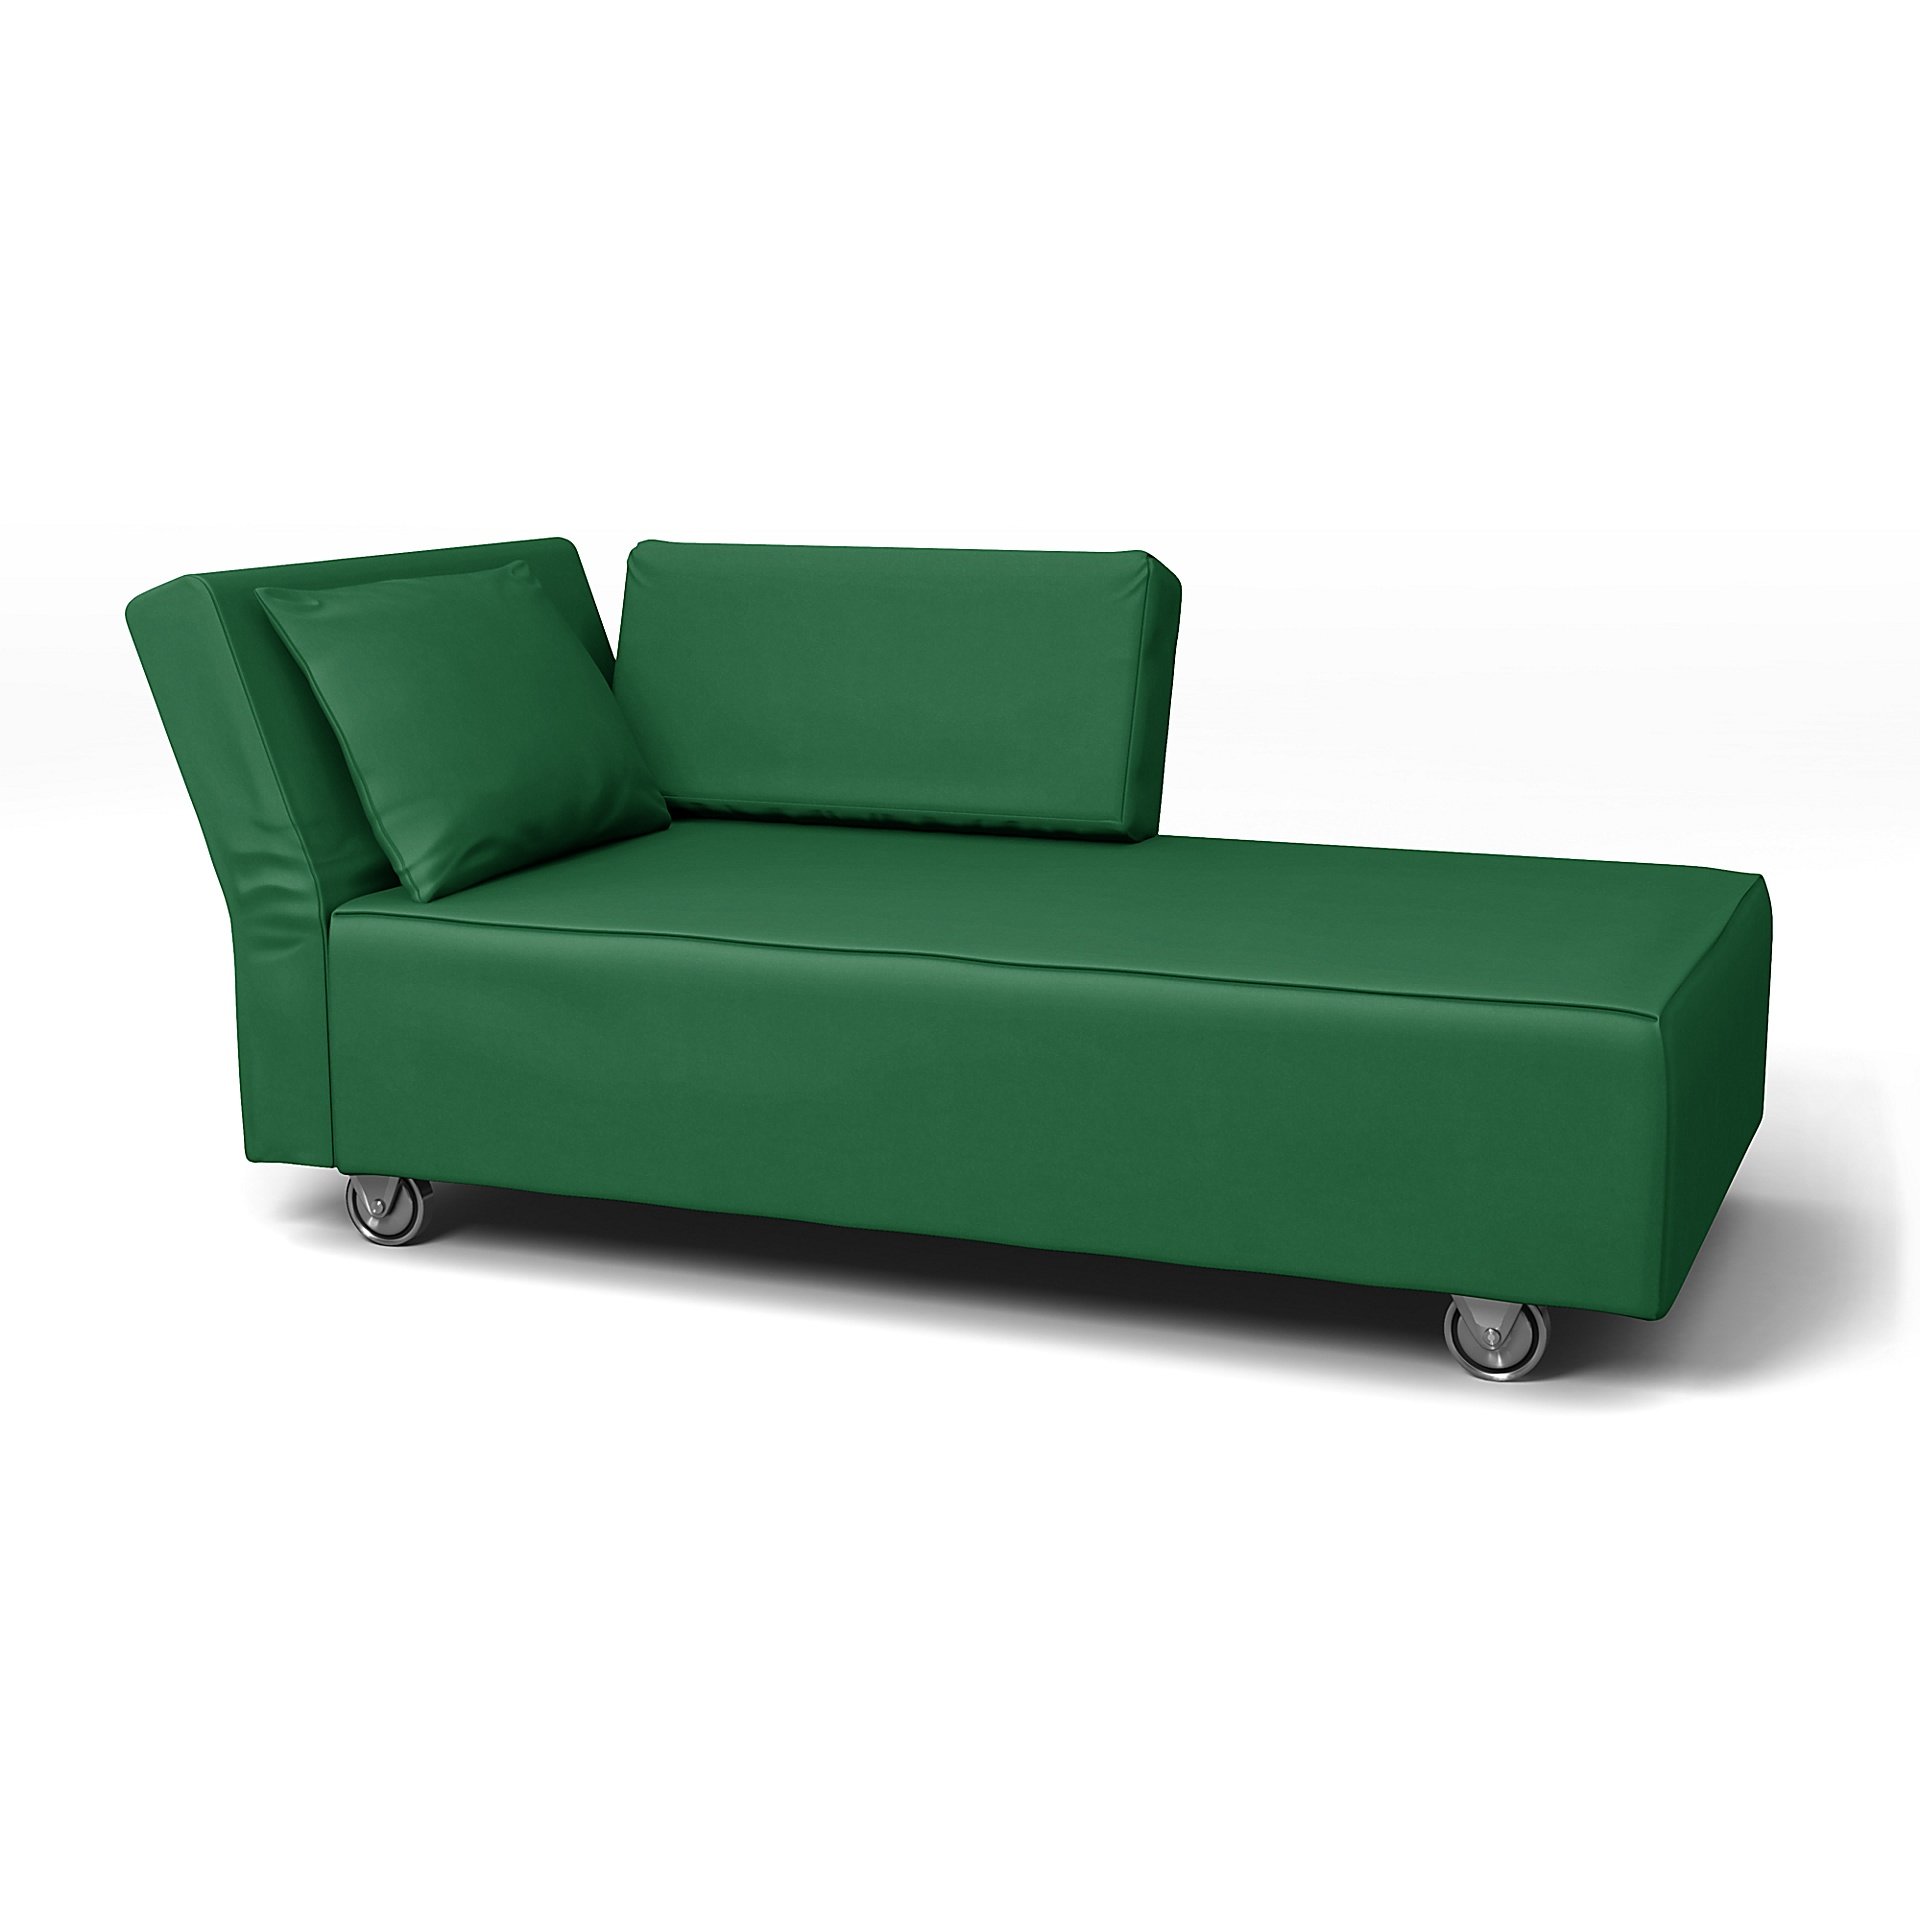 IKEA - Falsterbo Chaise with Left Armrest Cover, Abundant Green, Velvet - Bemz